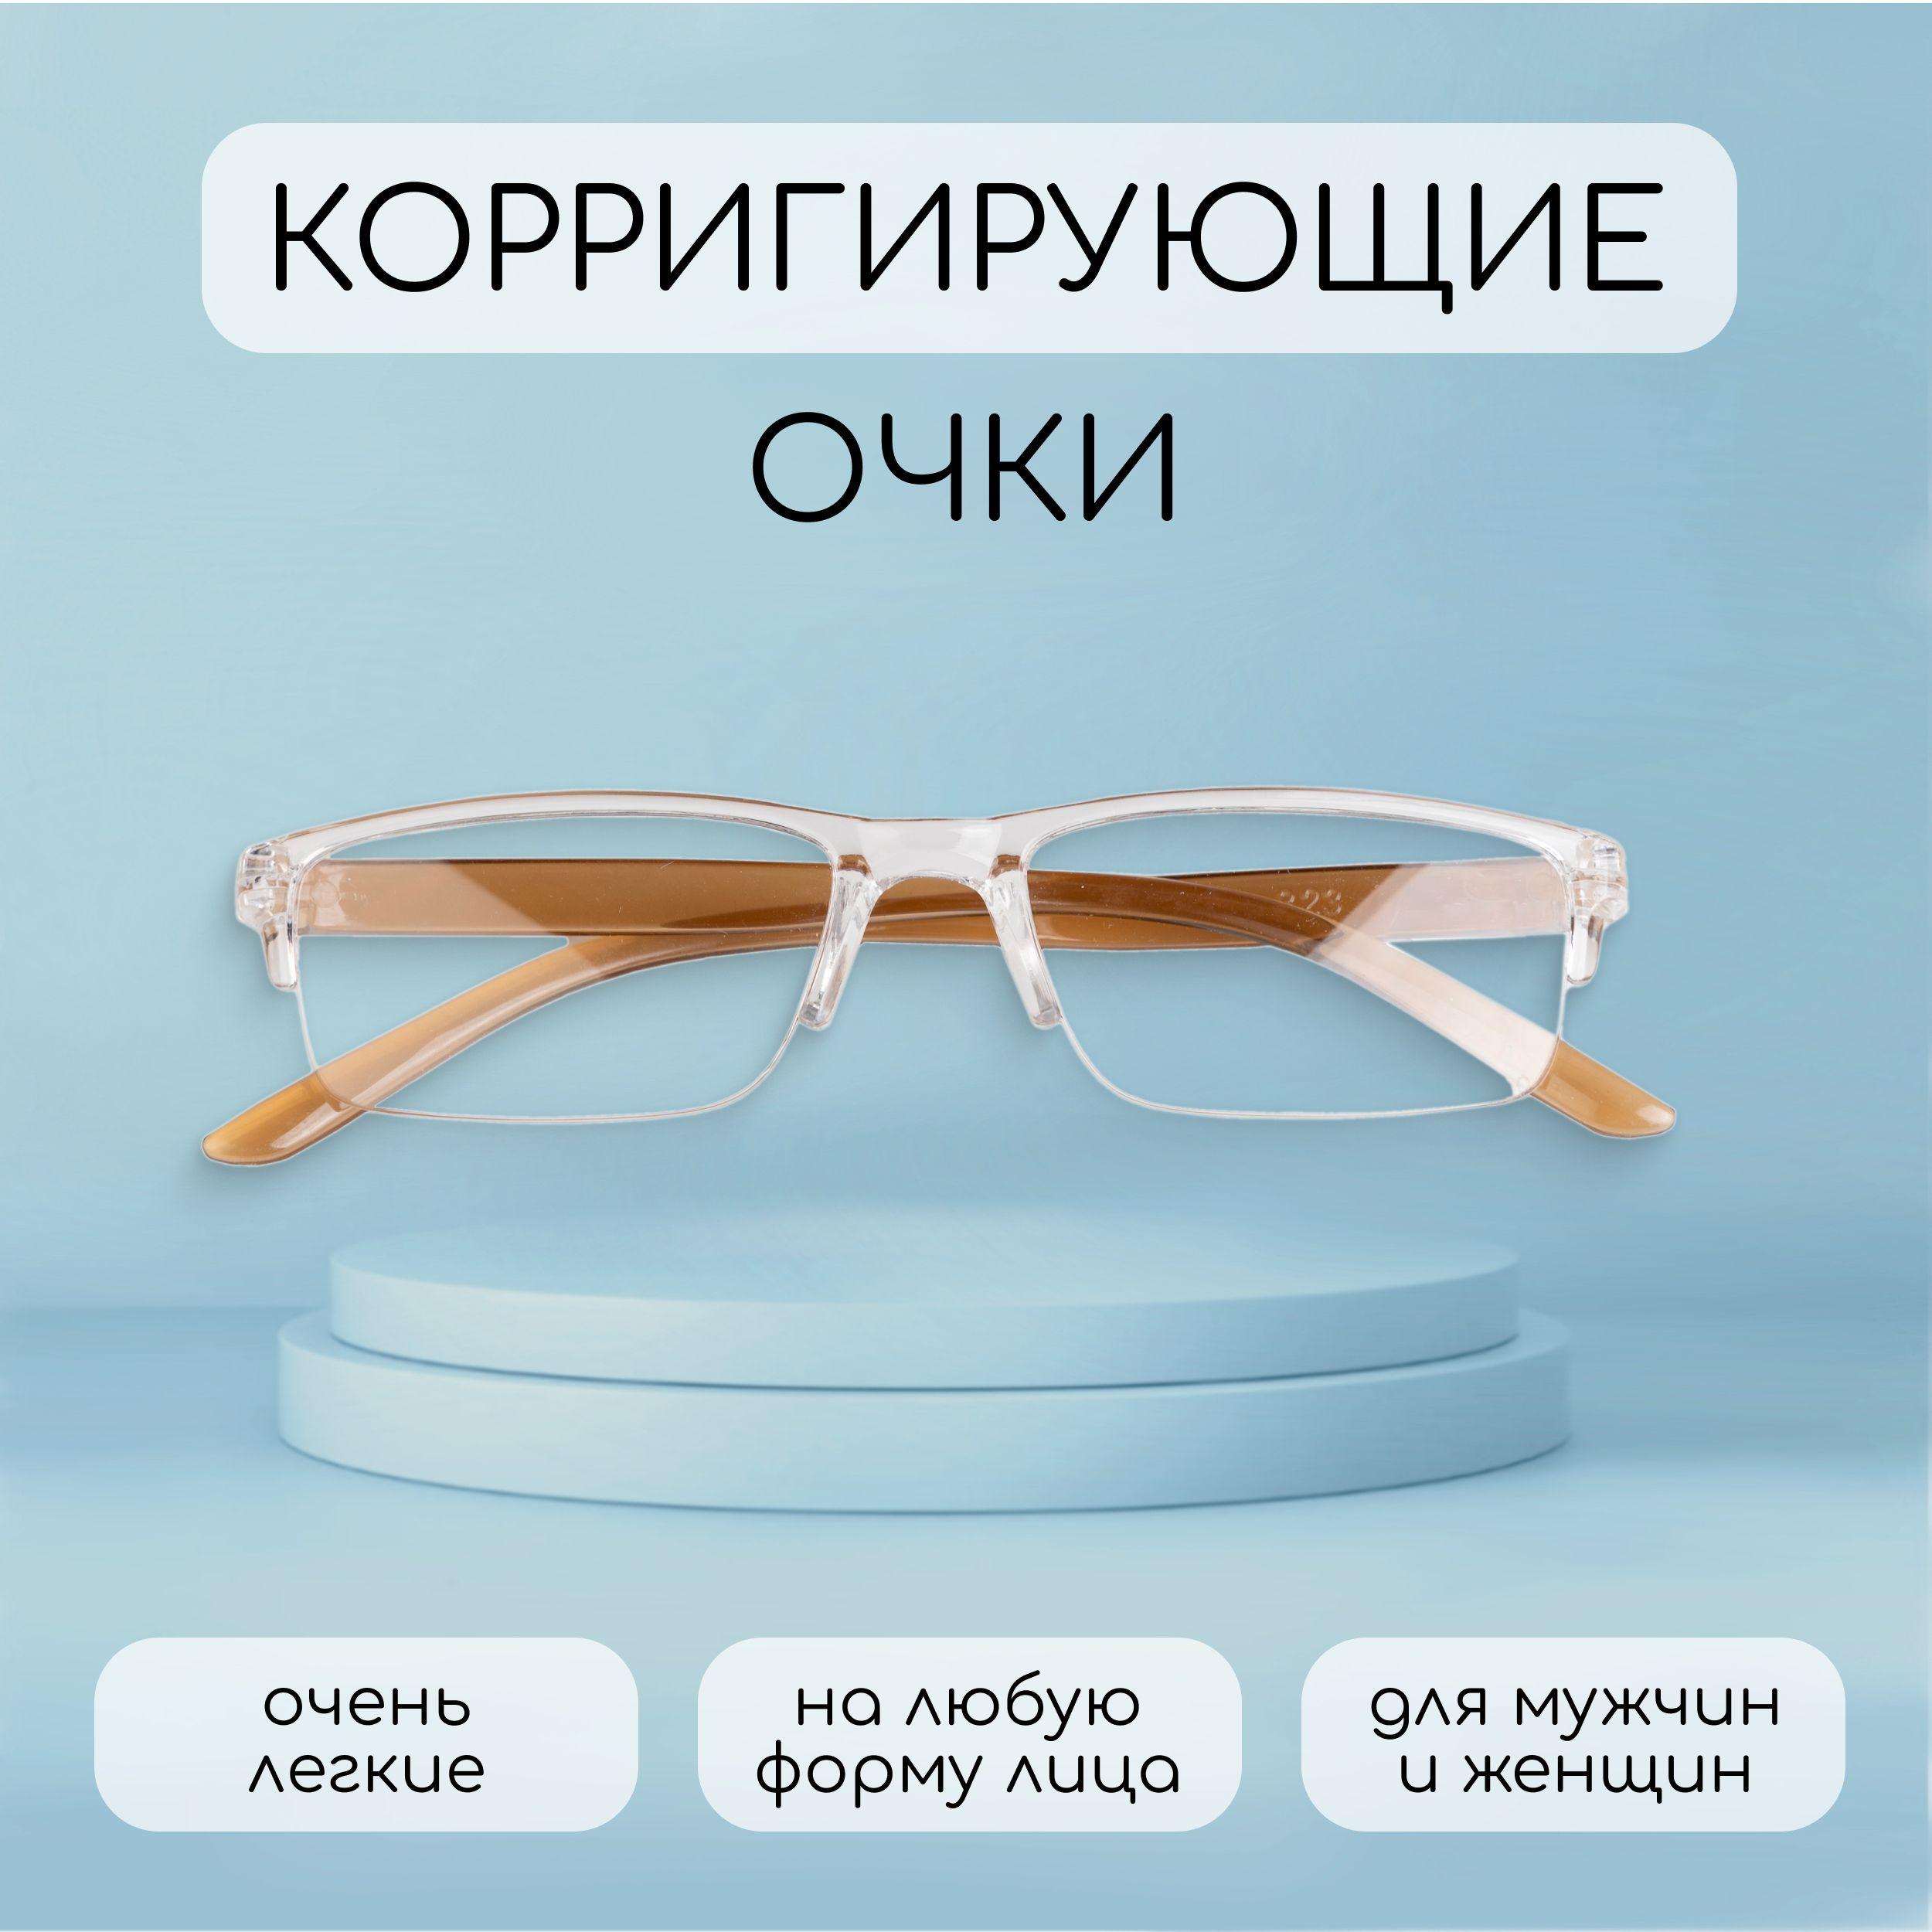 Готовые очки для зрения с диоптриями +2.5 корригирующие женские/мужские лектор, пластиковые, прямоугольные